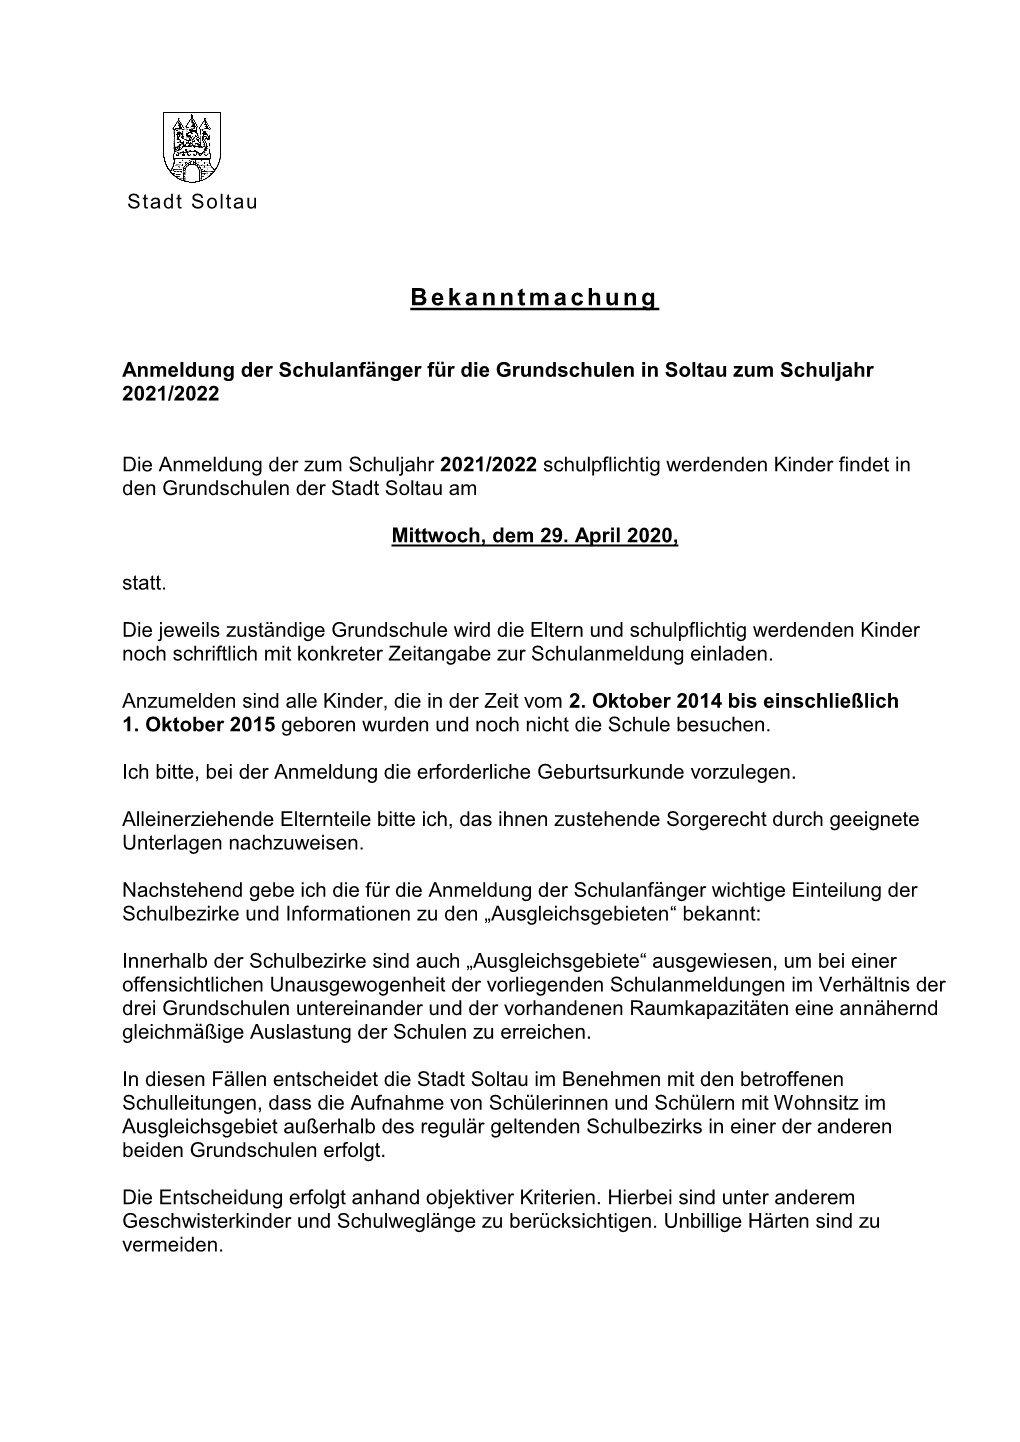 Anmeldung Der Schulanfänger Für Die Grundschulen in Soltau Zum Schuljahr 2021/2022